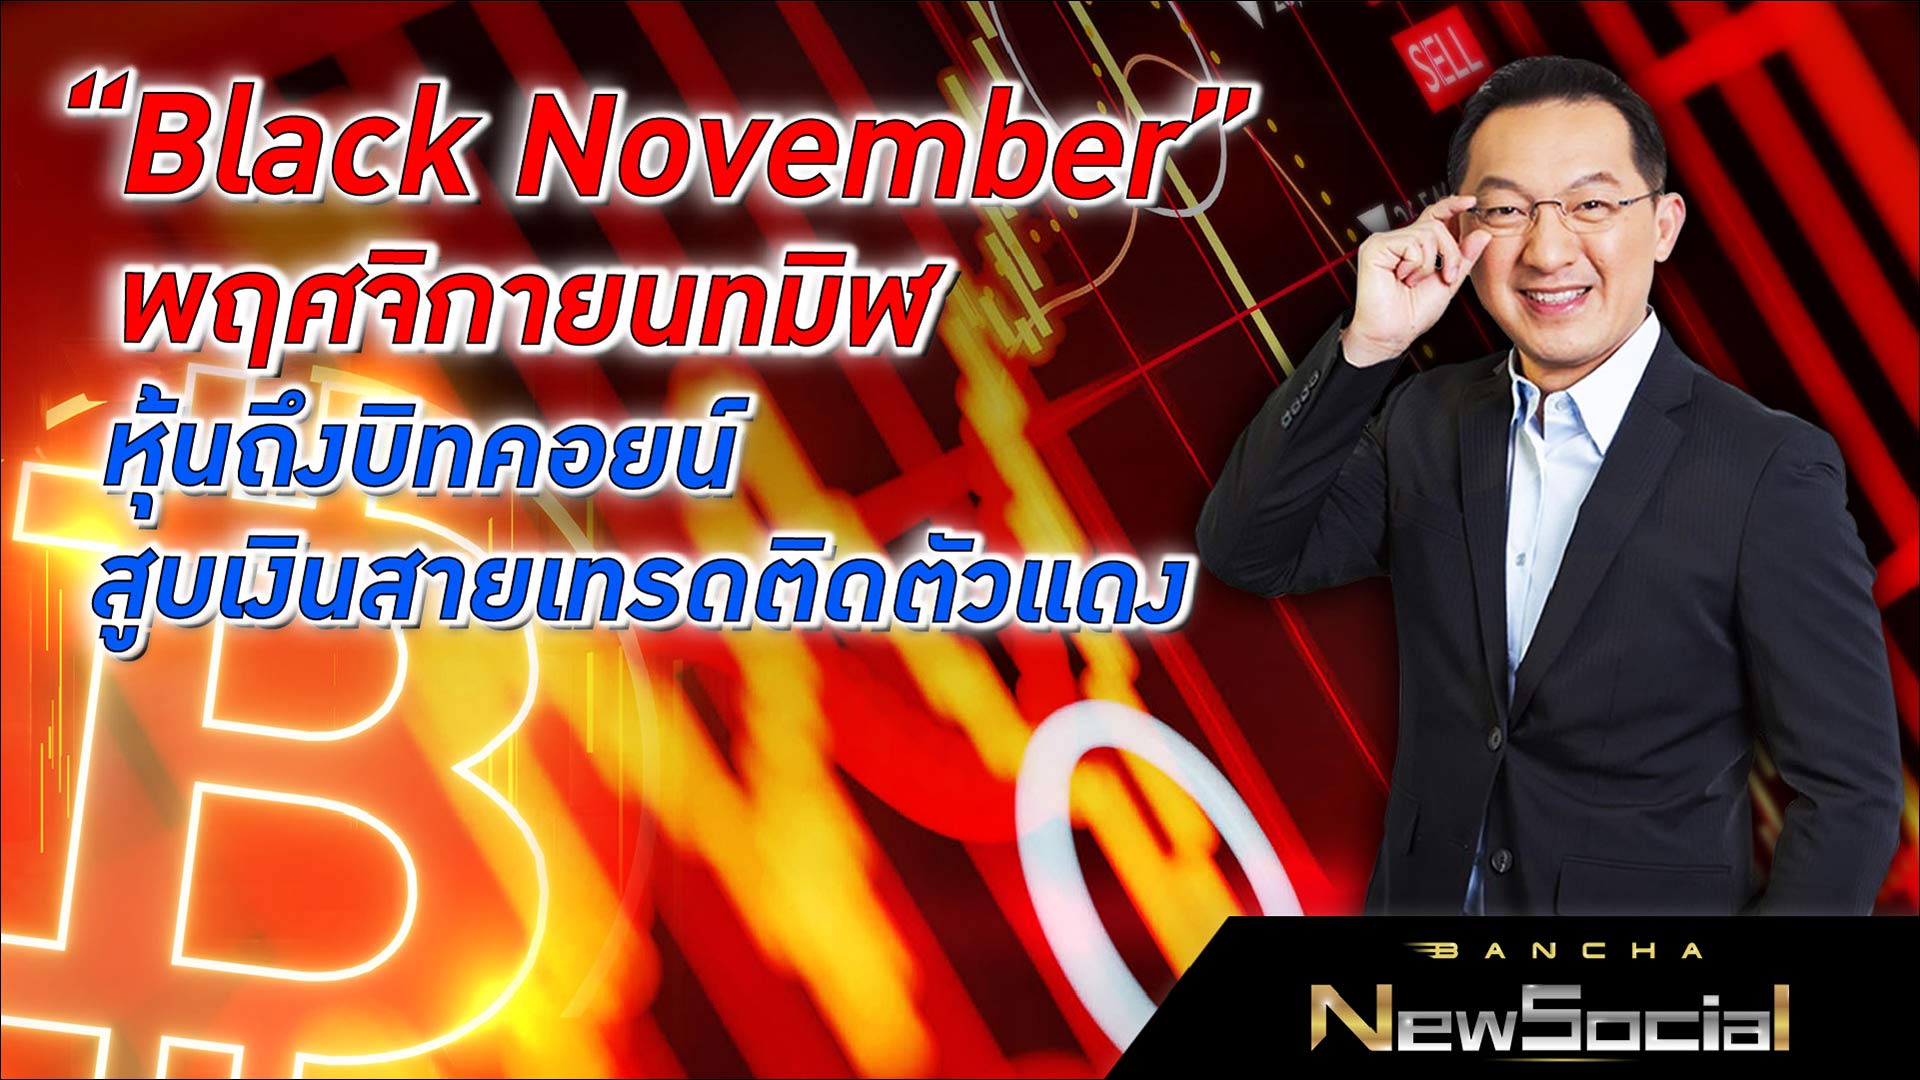 “Black November” พฤศจิกายนทมิฬ หุ้นถึงบิทคอยน์สูบเงินสายเทรดติดตัวแดง l EP.115 FULL l Bancha NewSocial